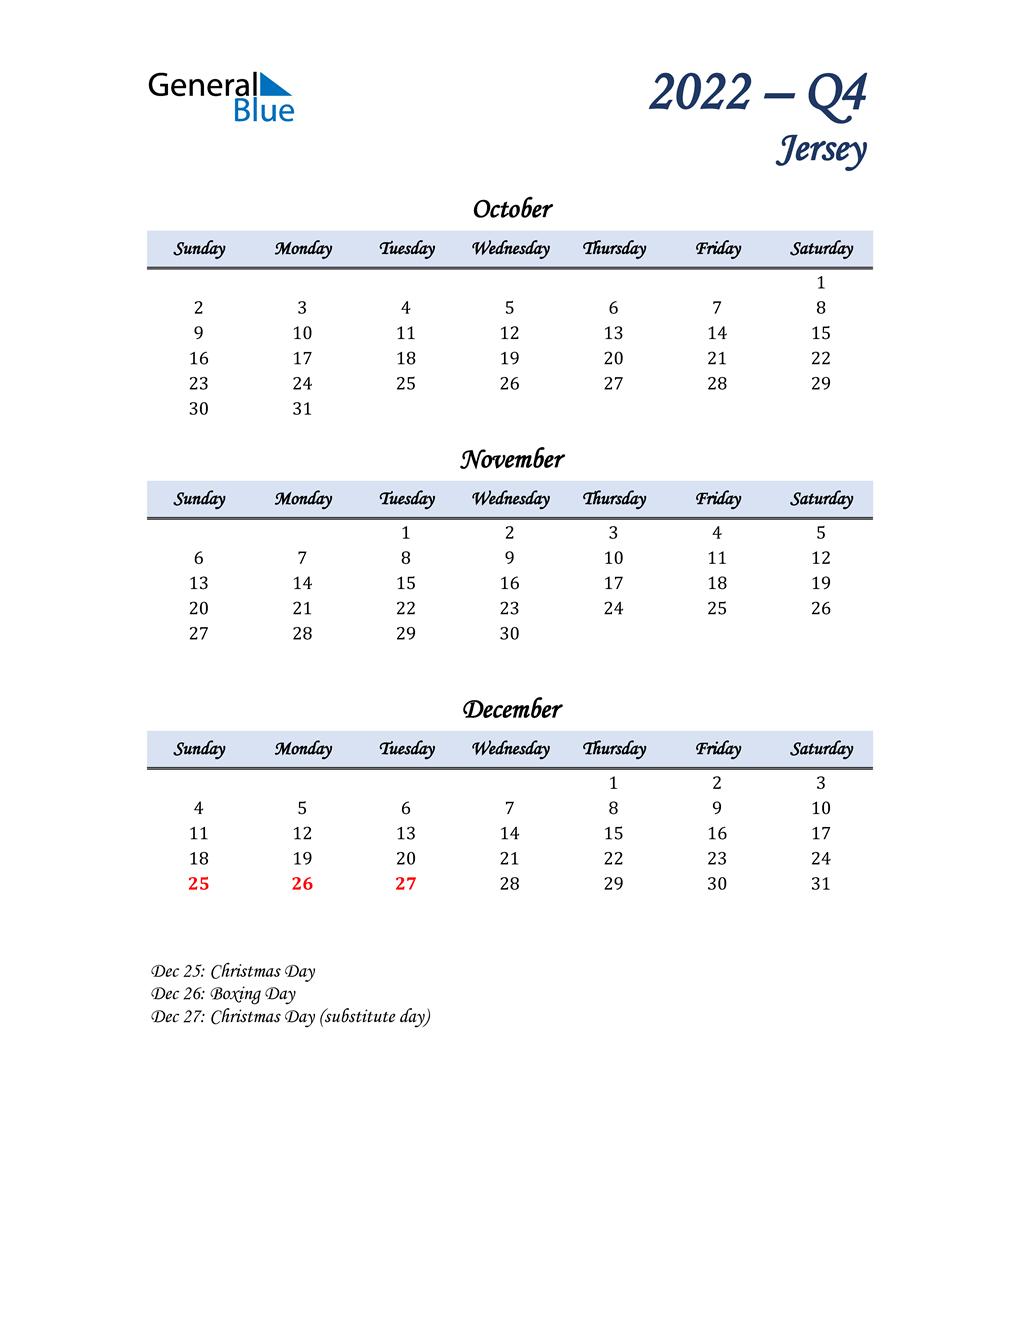  October, November, and December Calendar for Jersey